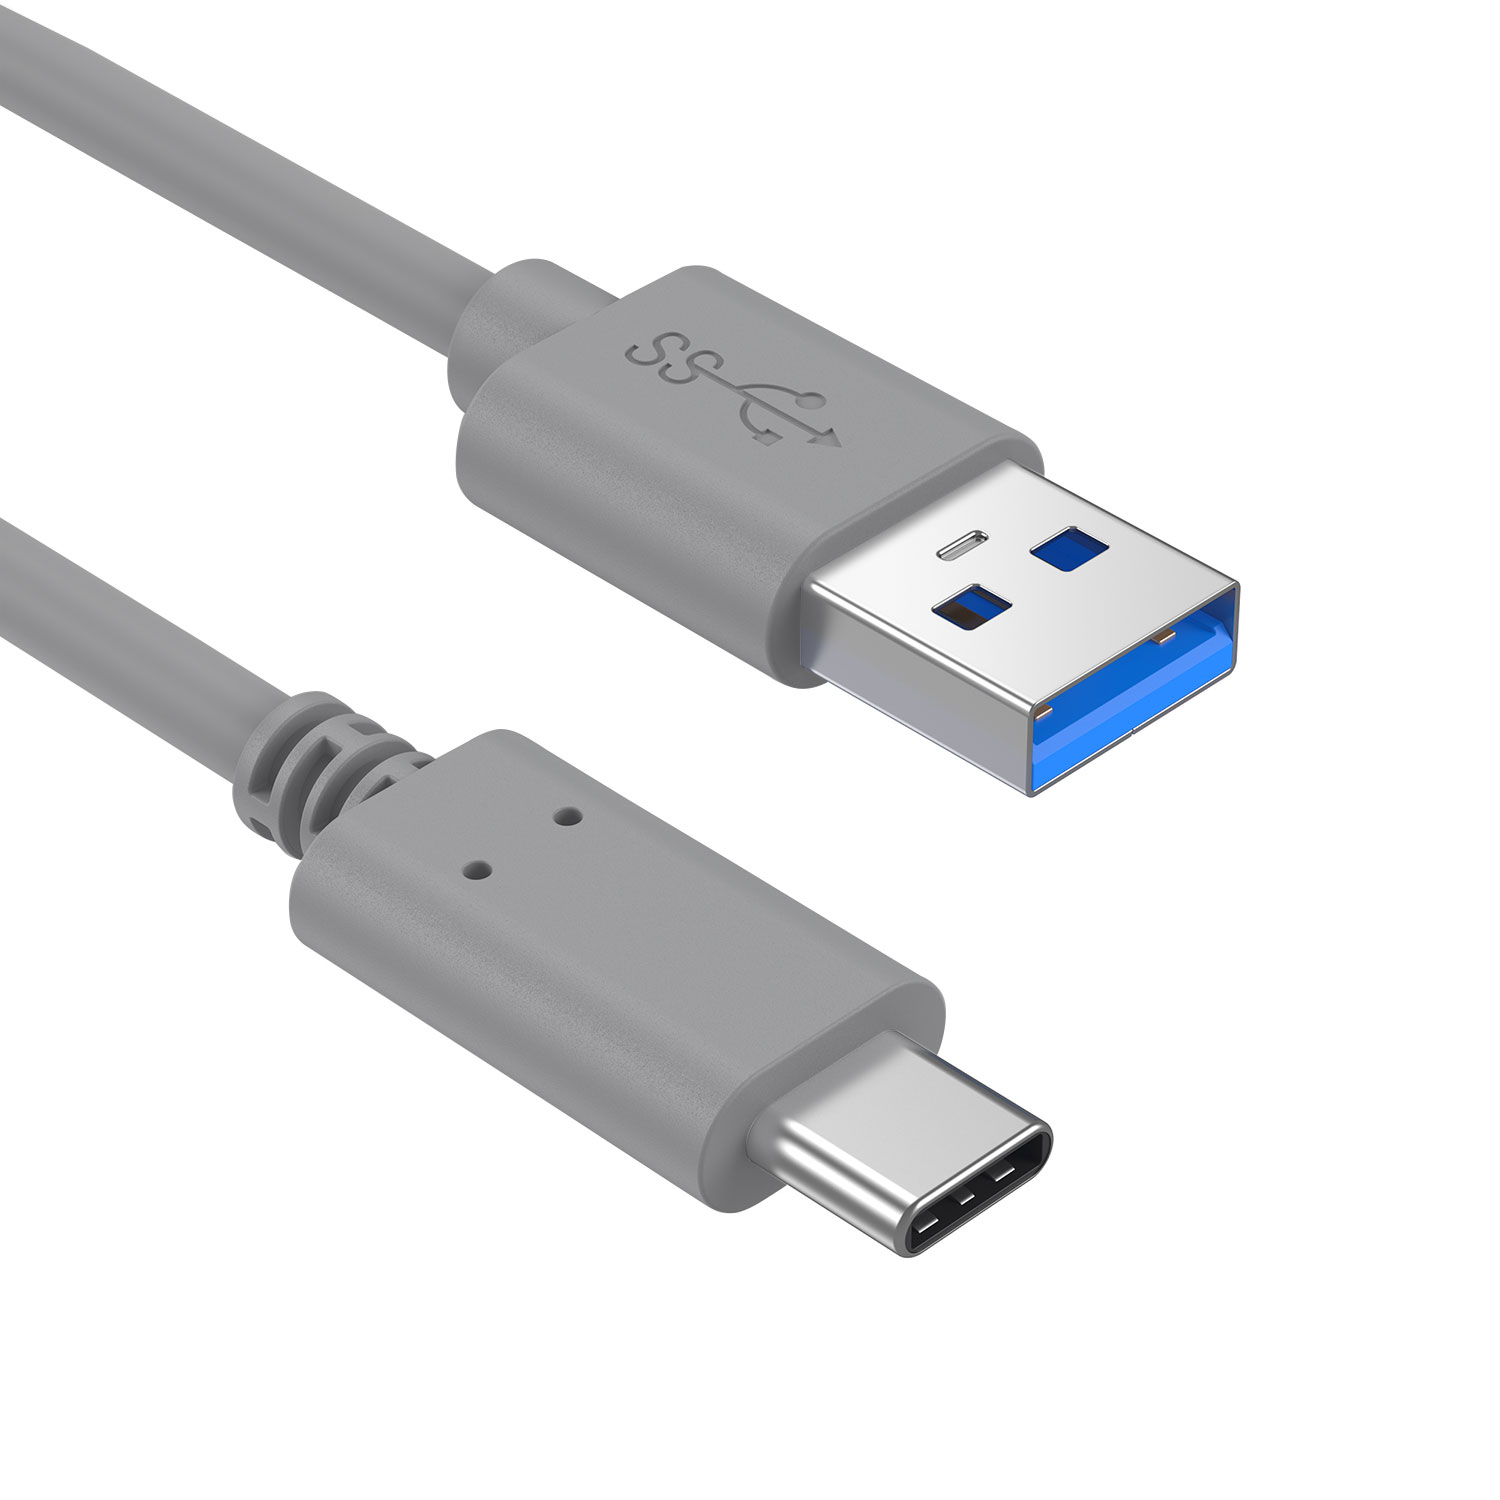 SLABO universell Kabel USB